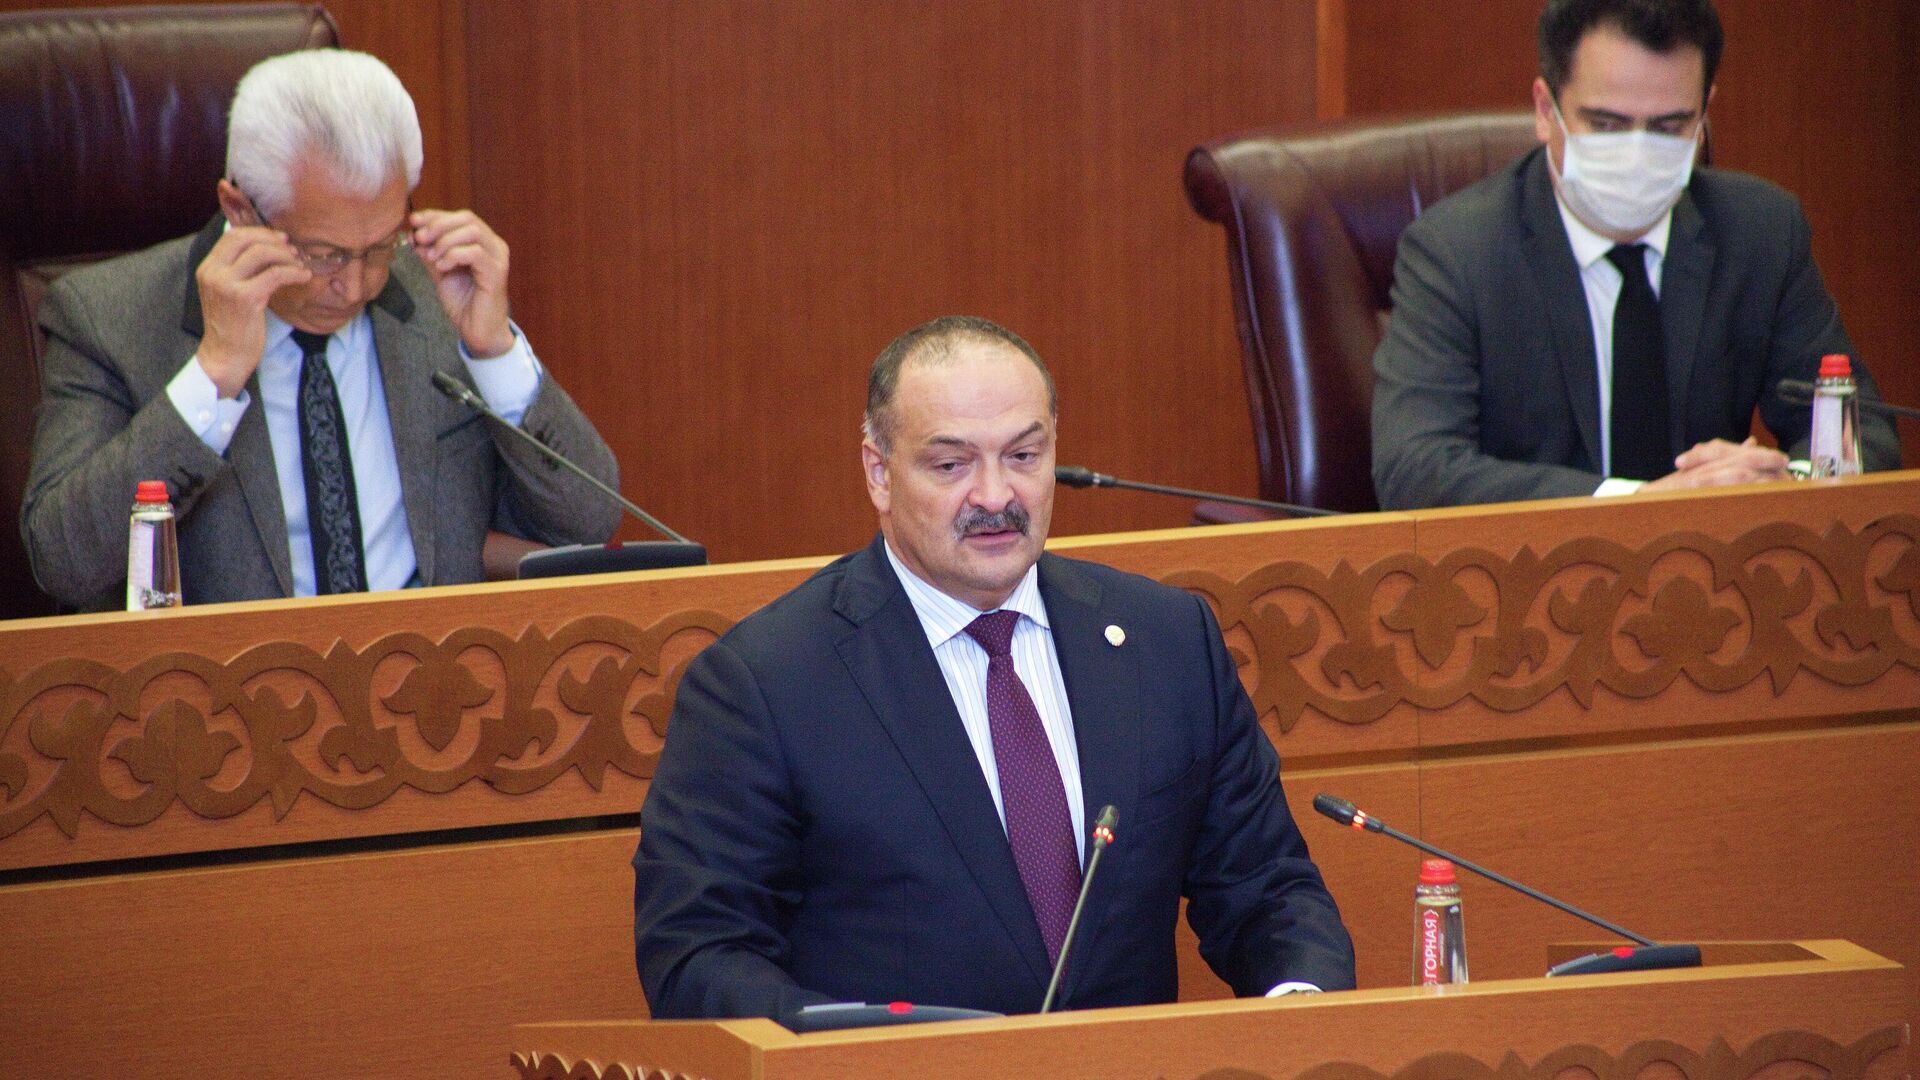 Министр здравоохранения Дагестана подал в отставку